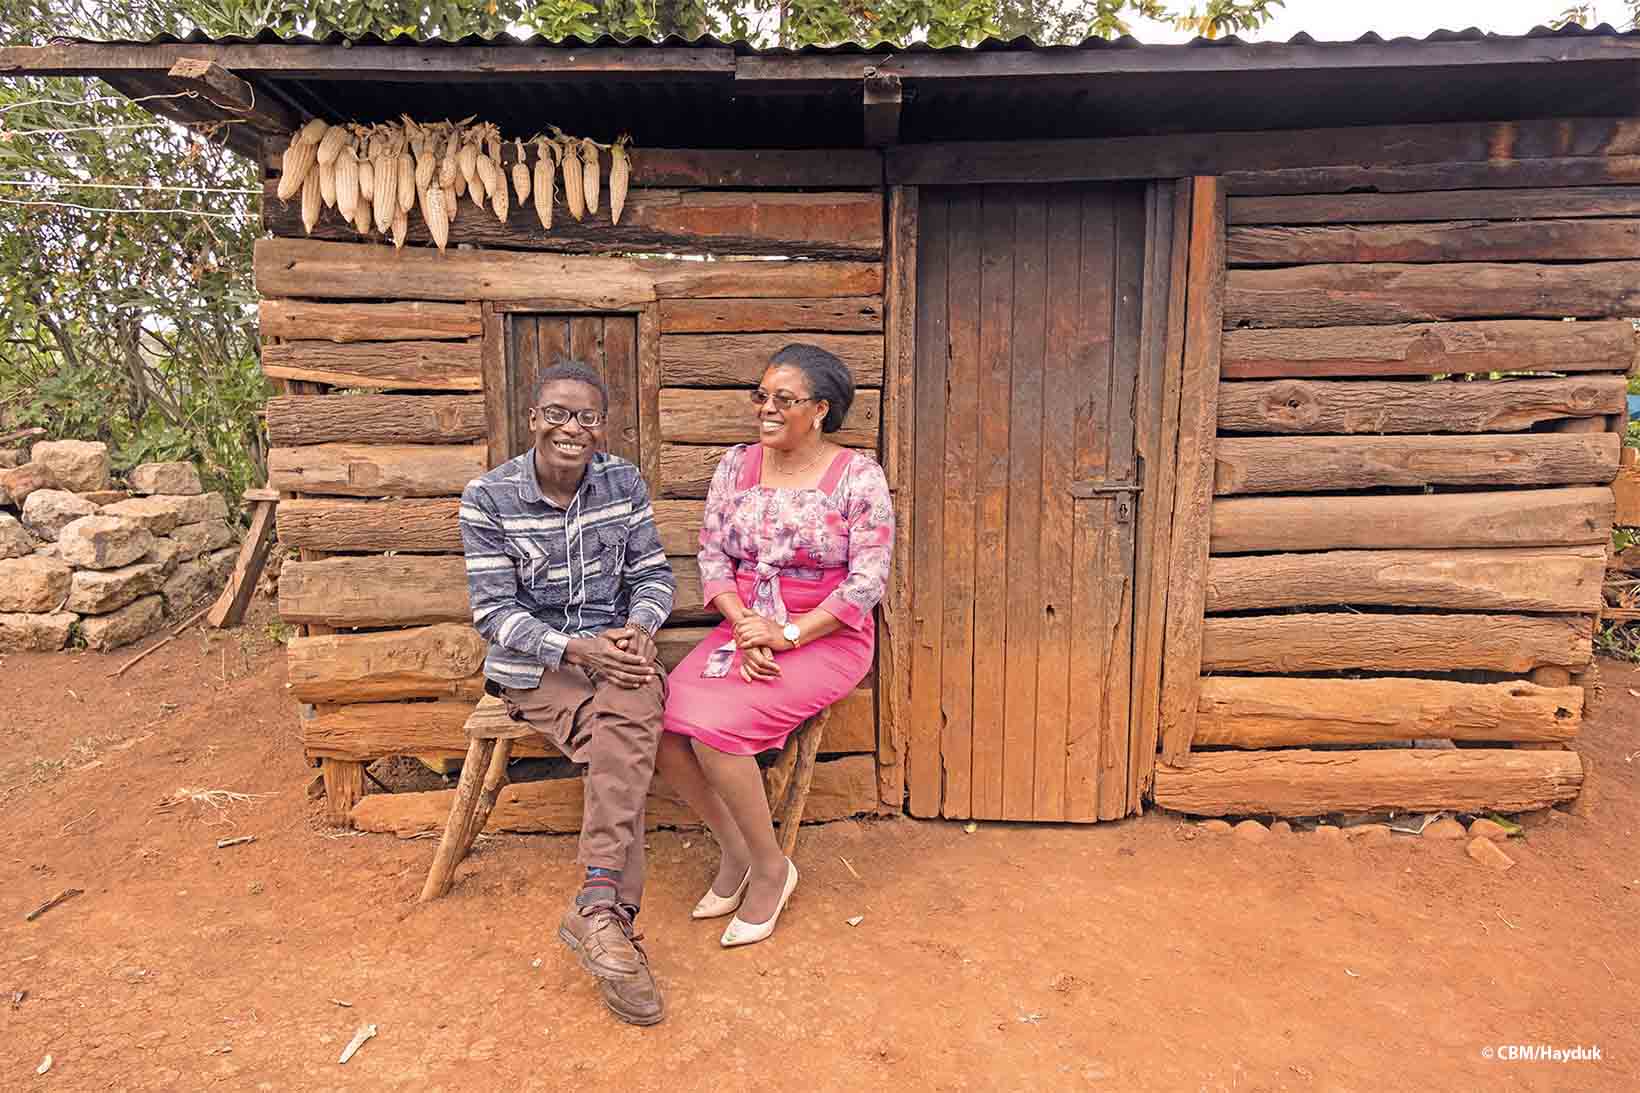 Un jeune adulte et une femme kenyans, sont assis sur un banc en bois devant une petite maison faite de planches. Le jeune homme porte des lunettes avec des verres de correction très épais.